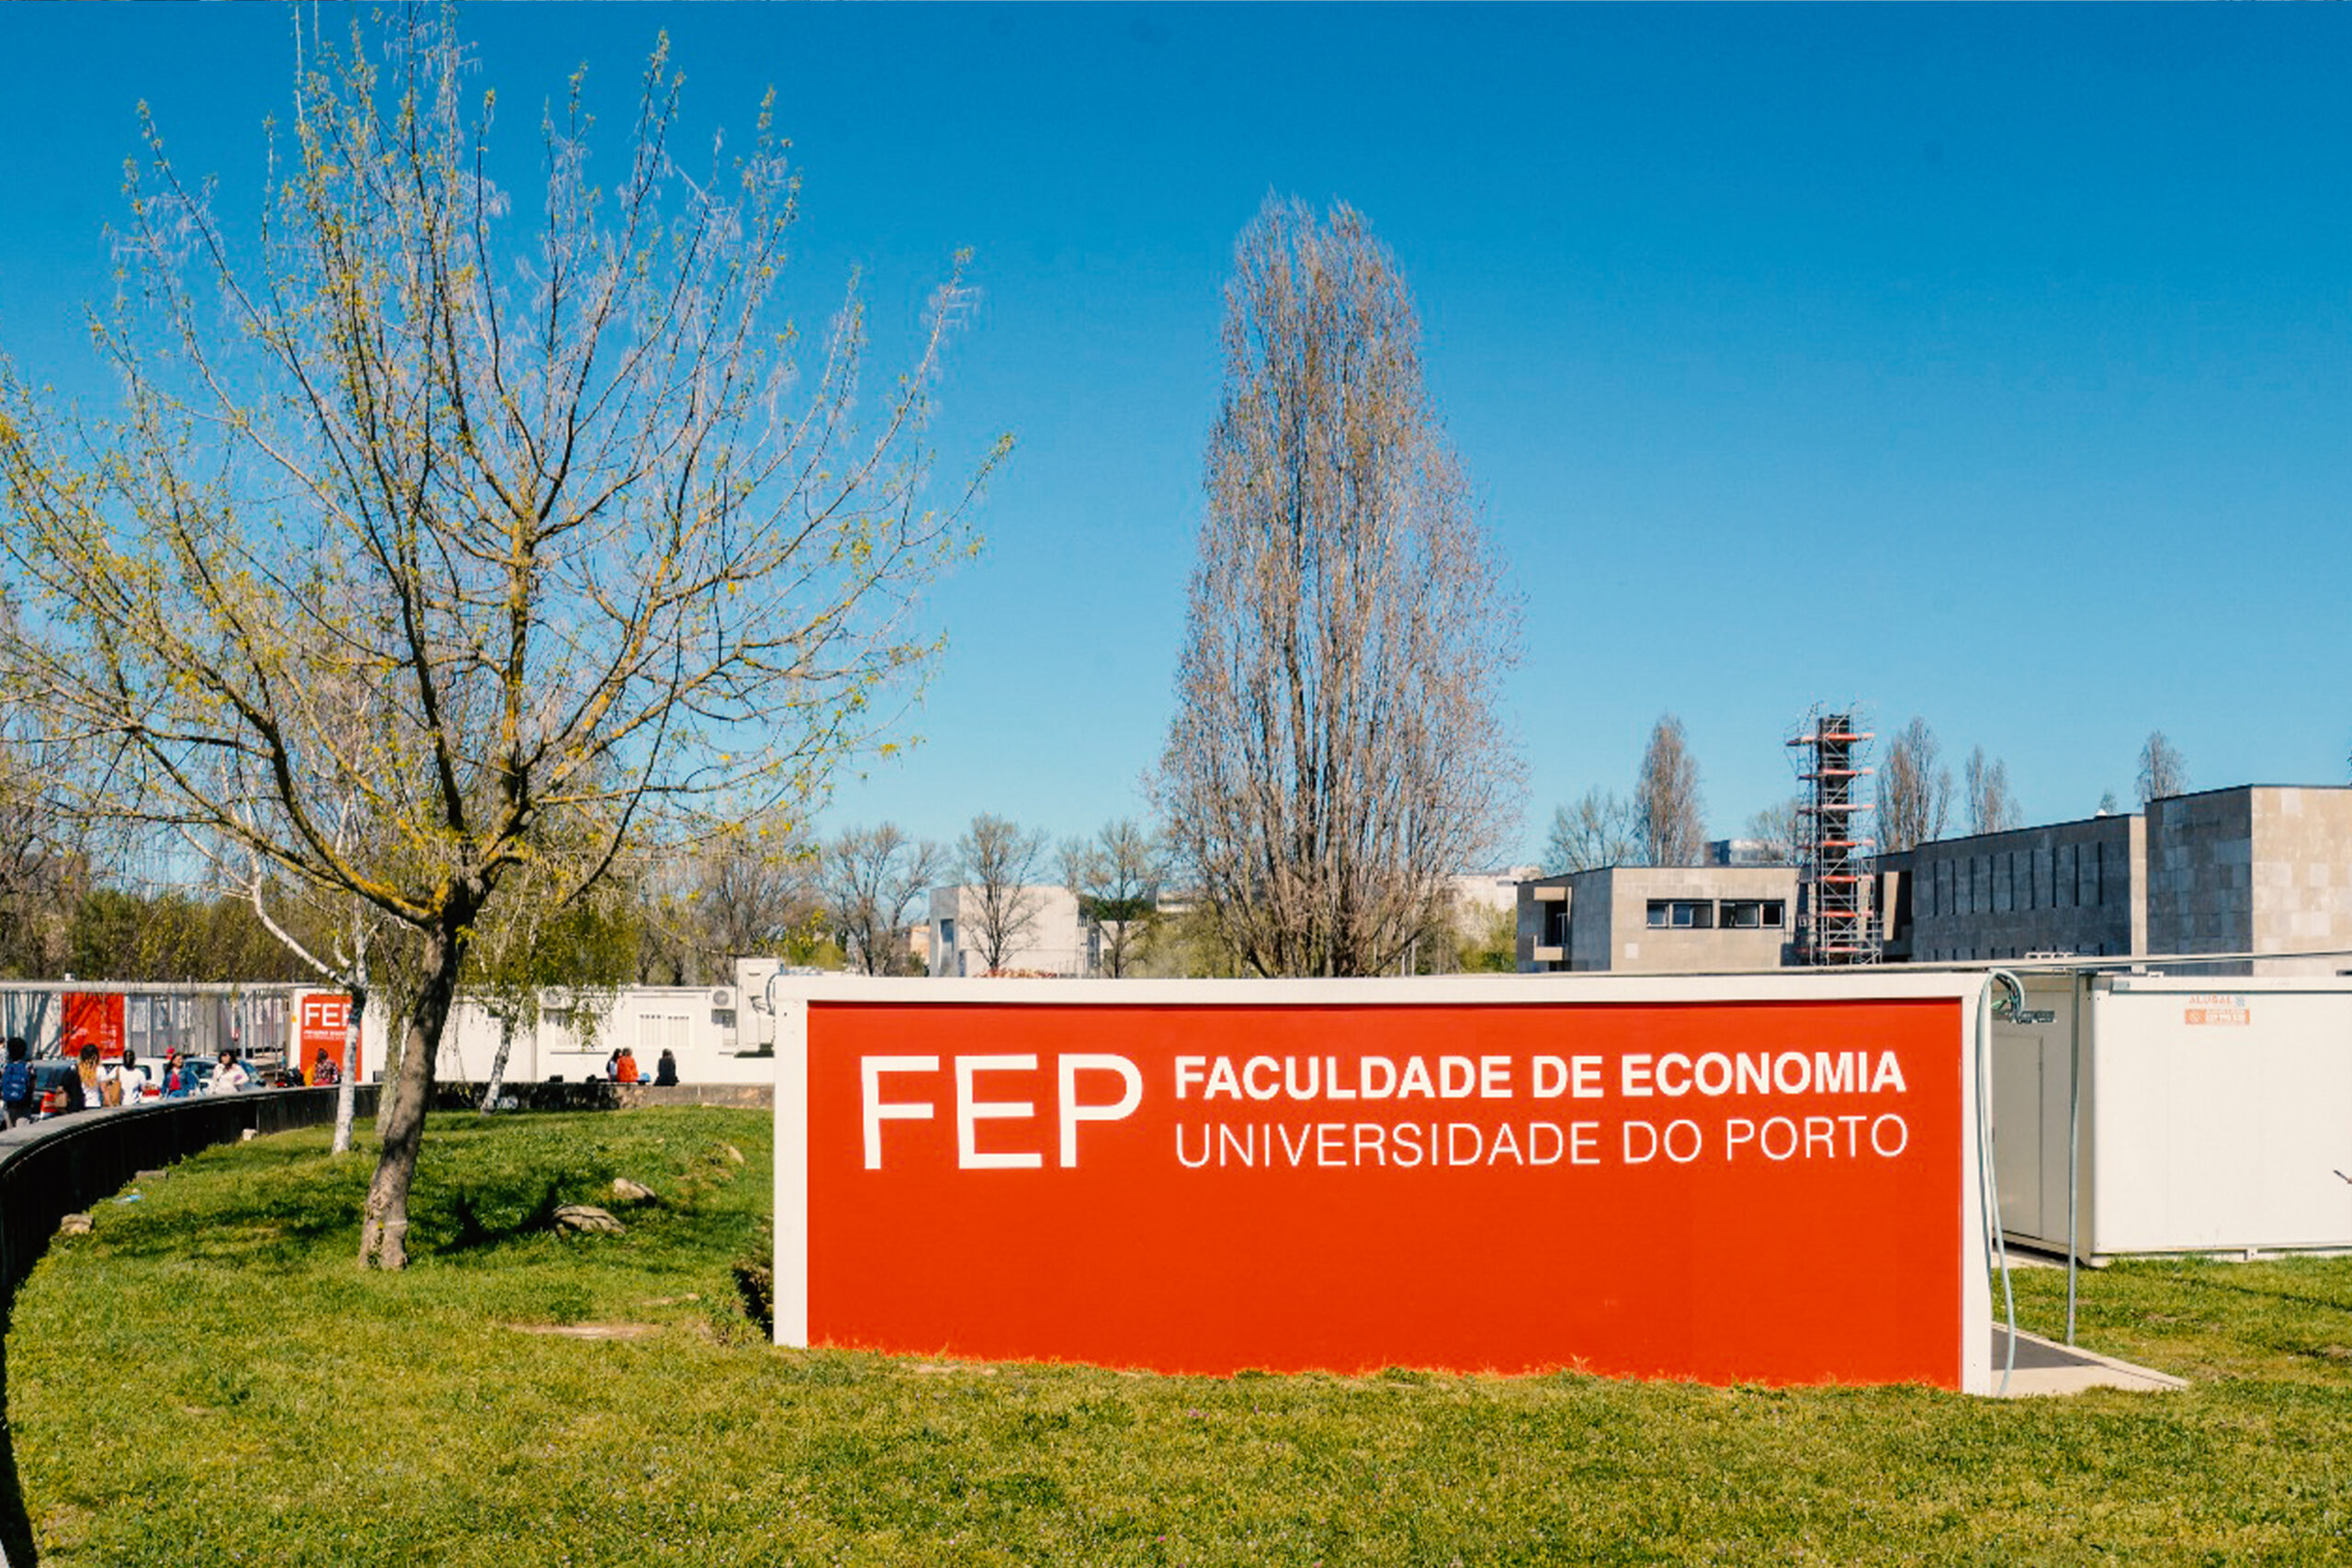 Faculdade de Economia da Universidade do Porto - Alugal